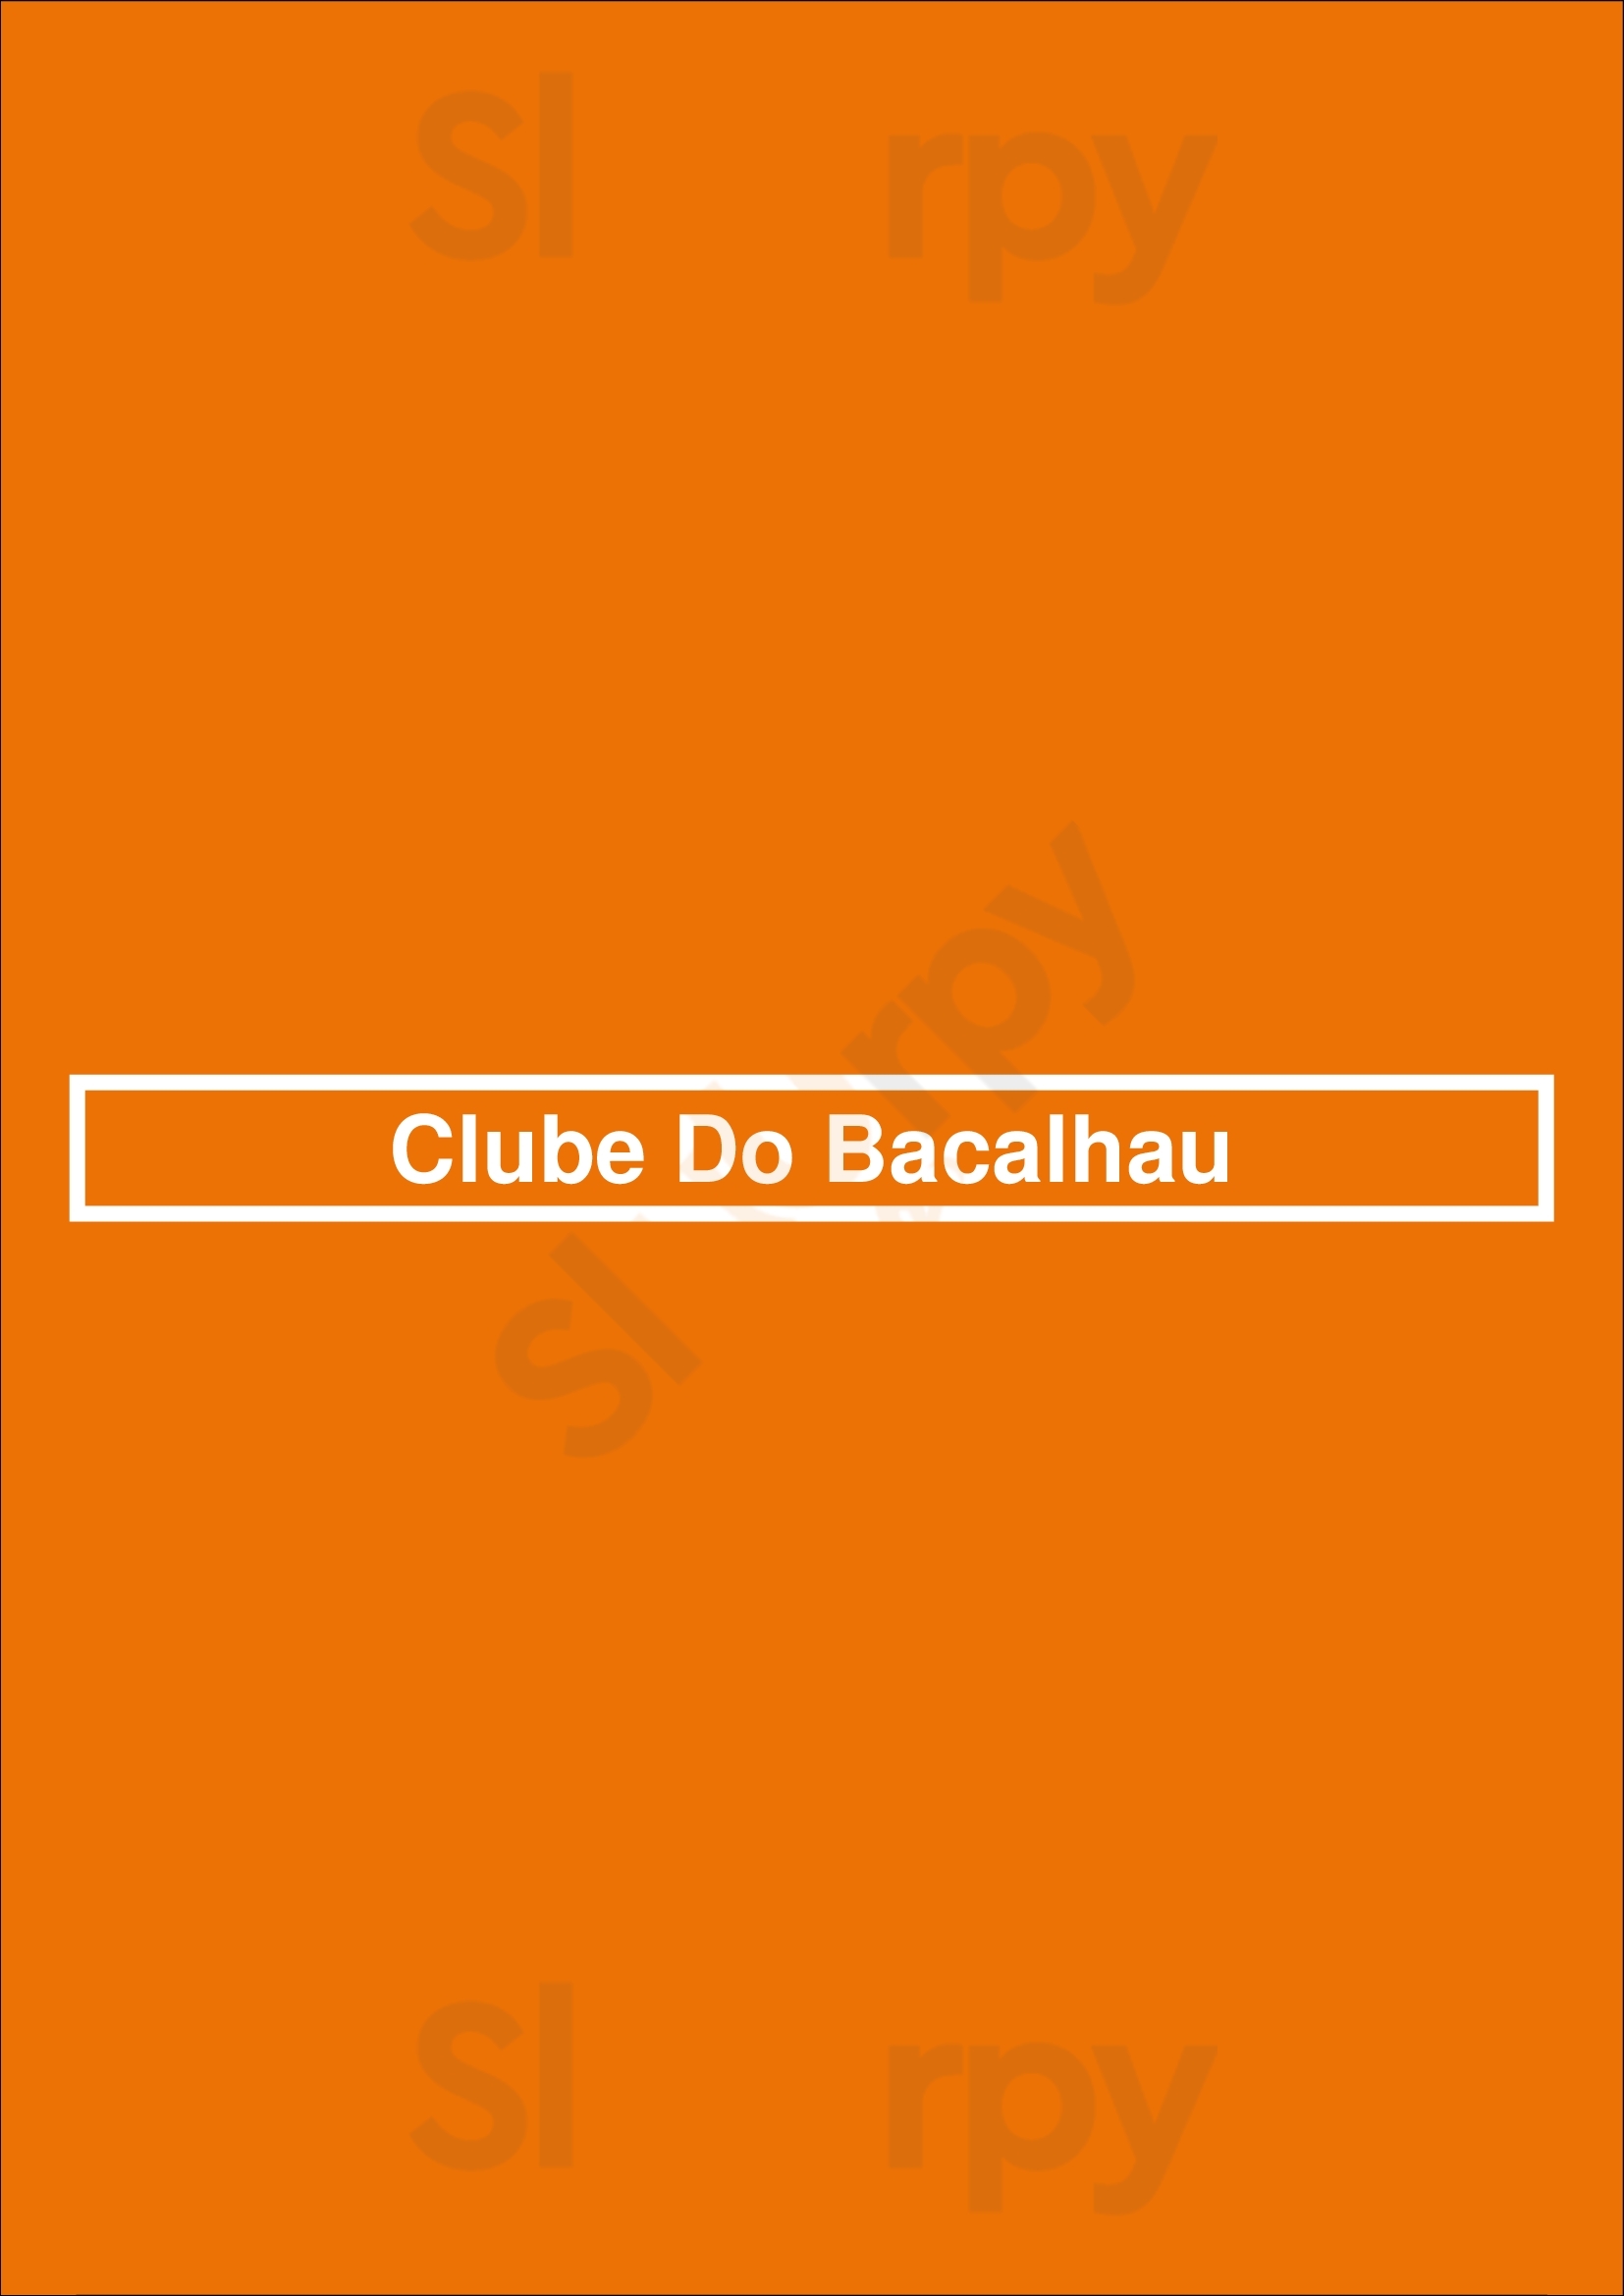 Clube Do Bacalhau Lisboa Menu - 1